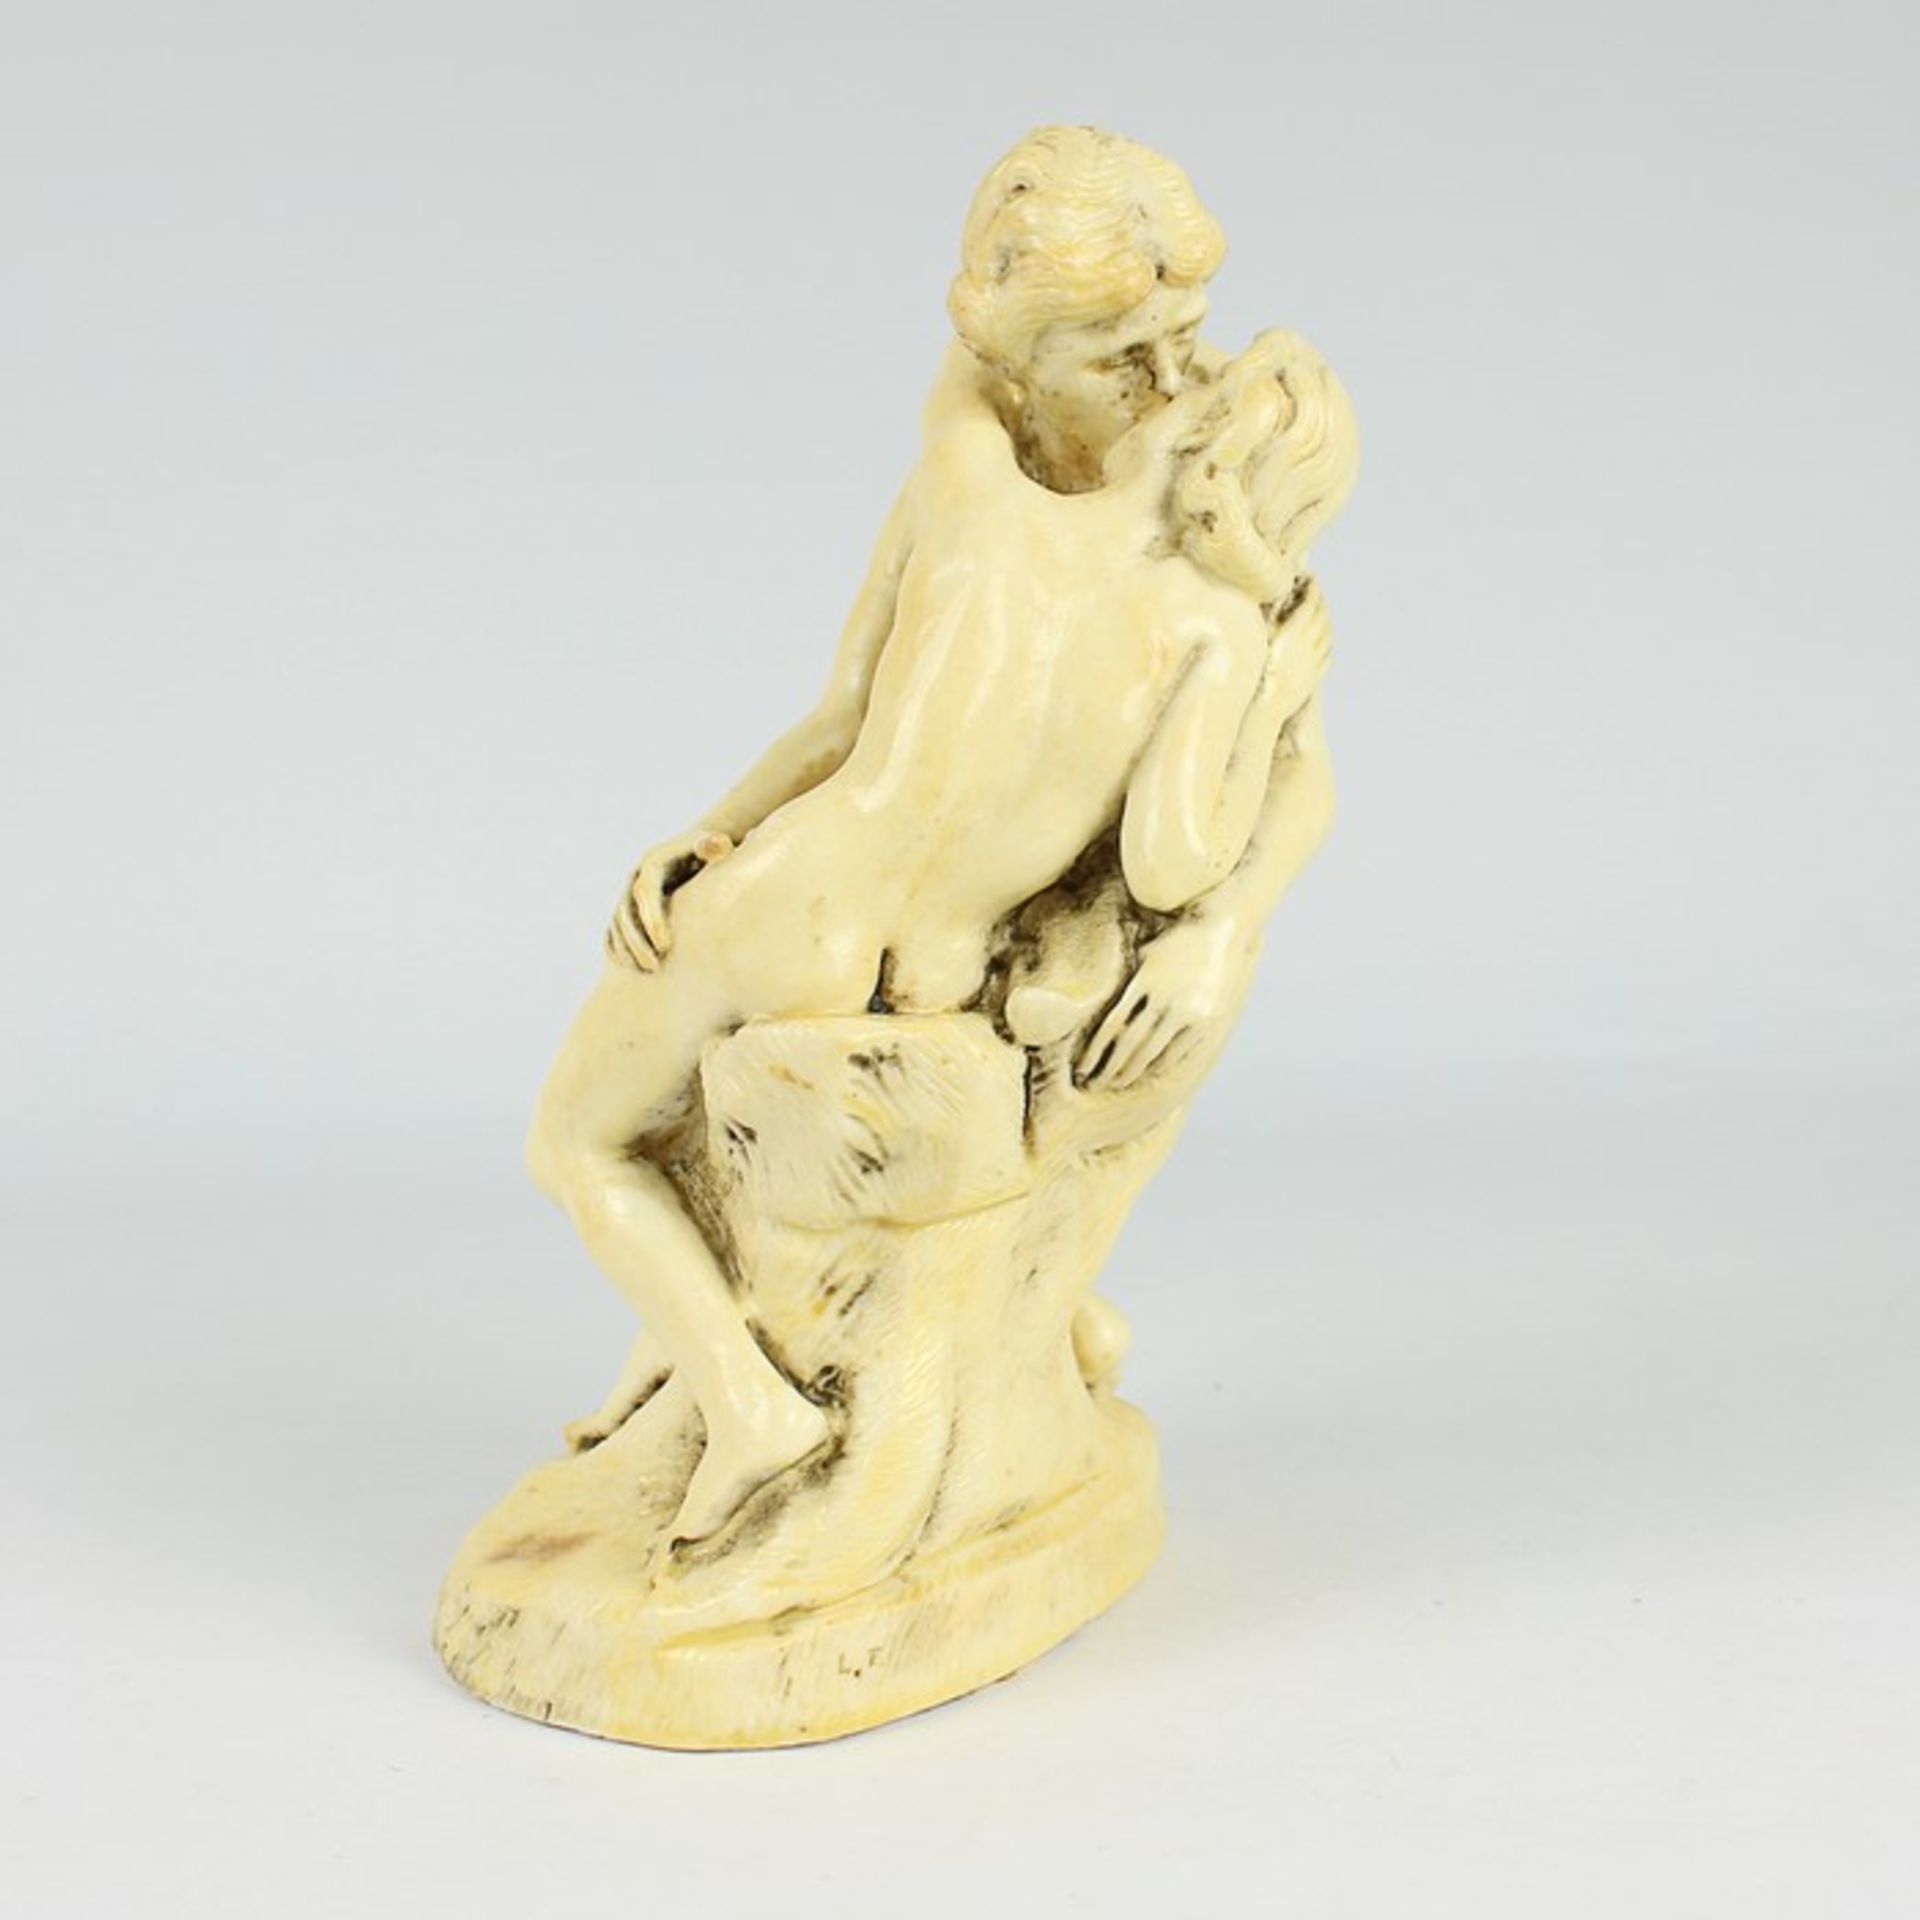 Figur20.Jh., Maße, gelblich lackiert, nach August Rodin "Der Kuss", vollplastische Figurengruppe - Bild 5 aus 6